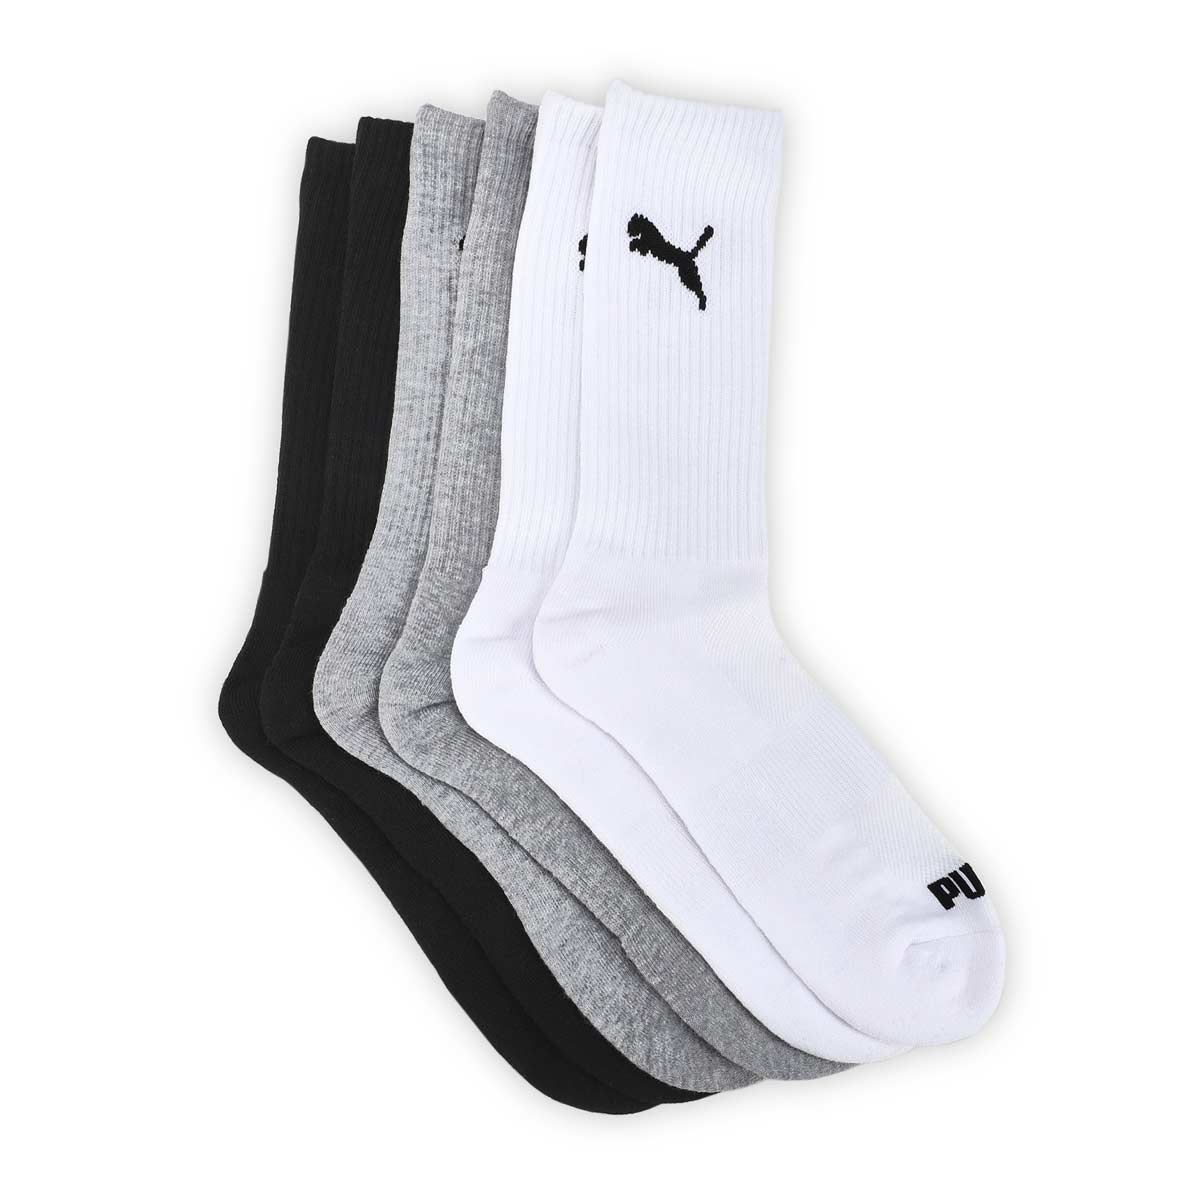 Men's Core Basics Crew Sock 6 Pack - White/Black/Grey